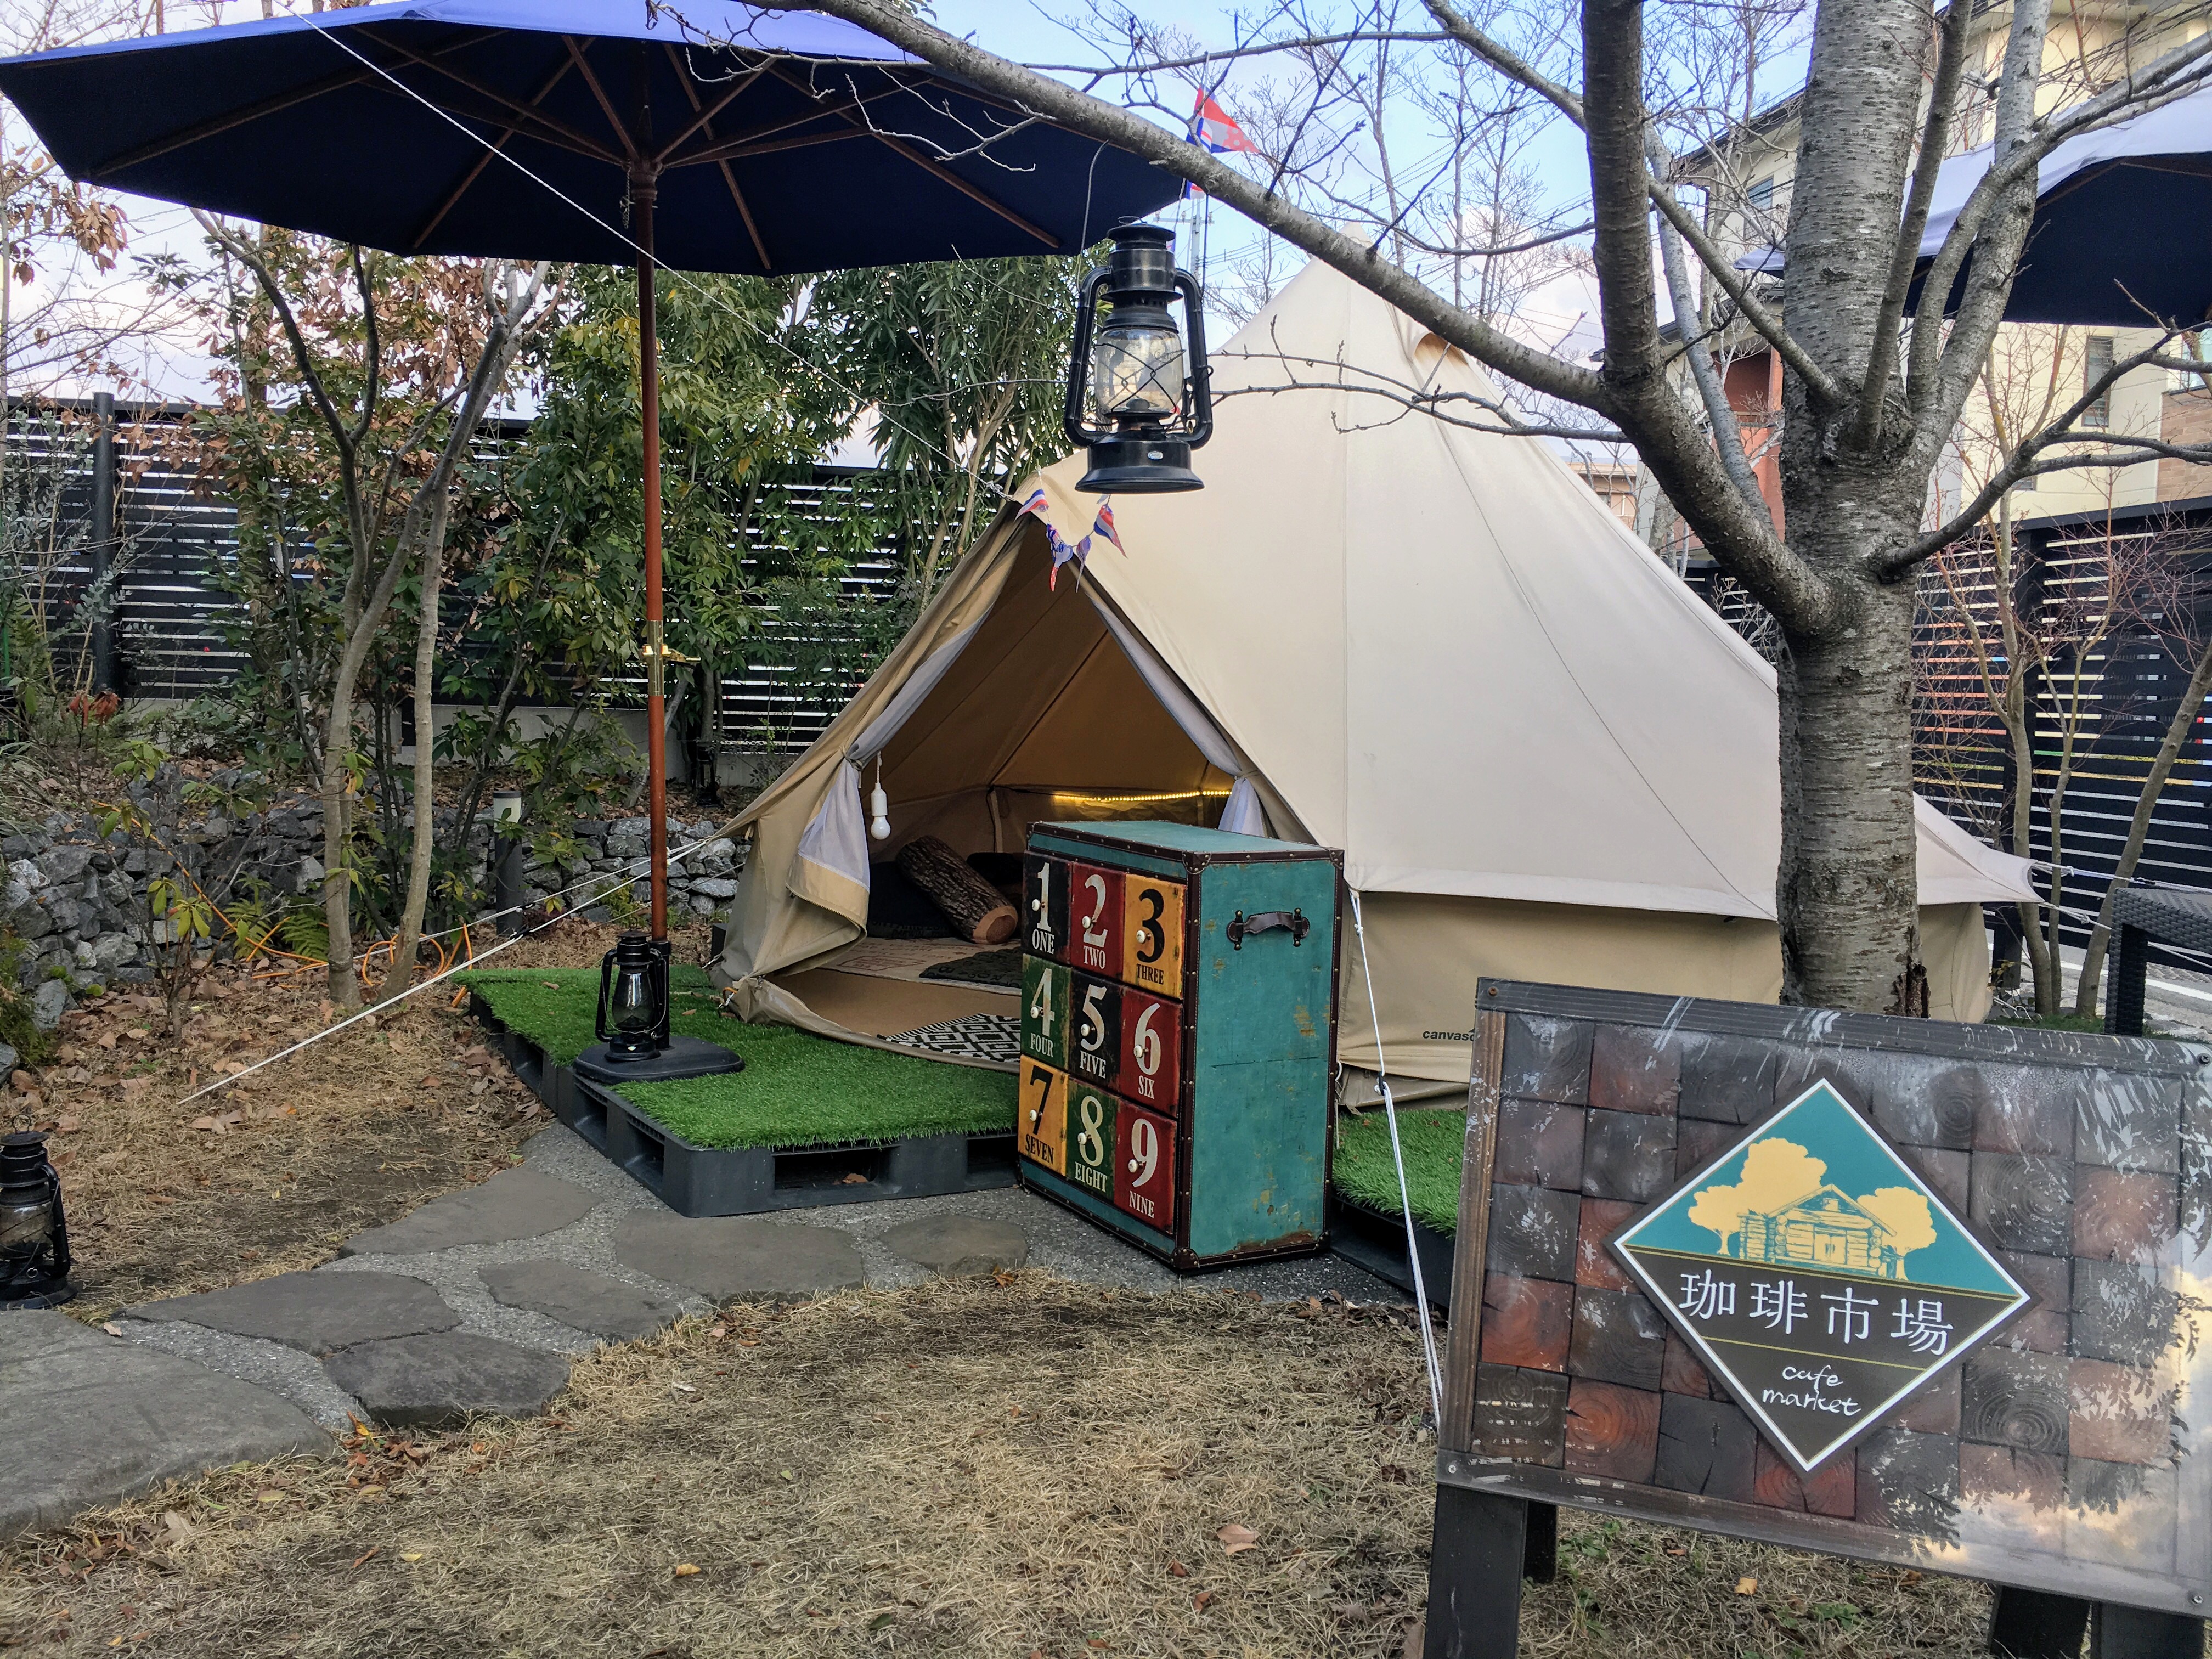 珈琲市場 熊本 長嶺でグランピング女子会ができる隠れ家カフェ 熊本ポータル くまライク